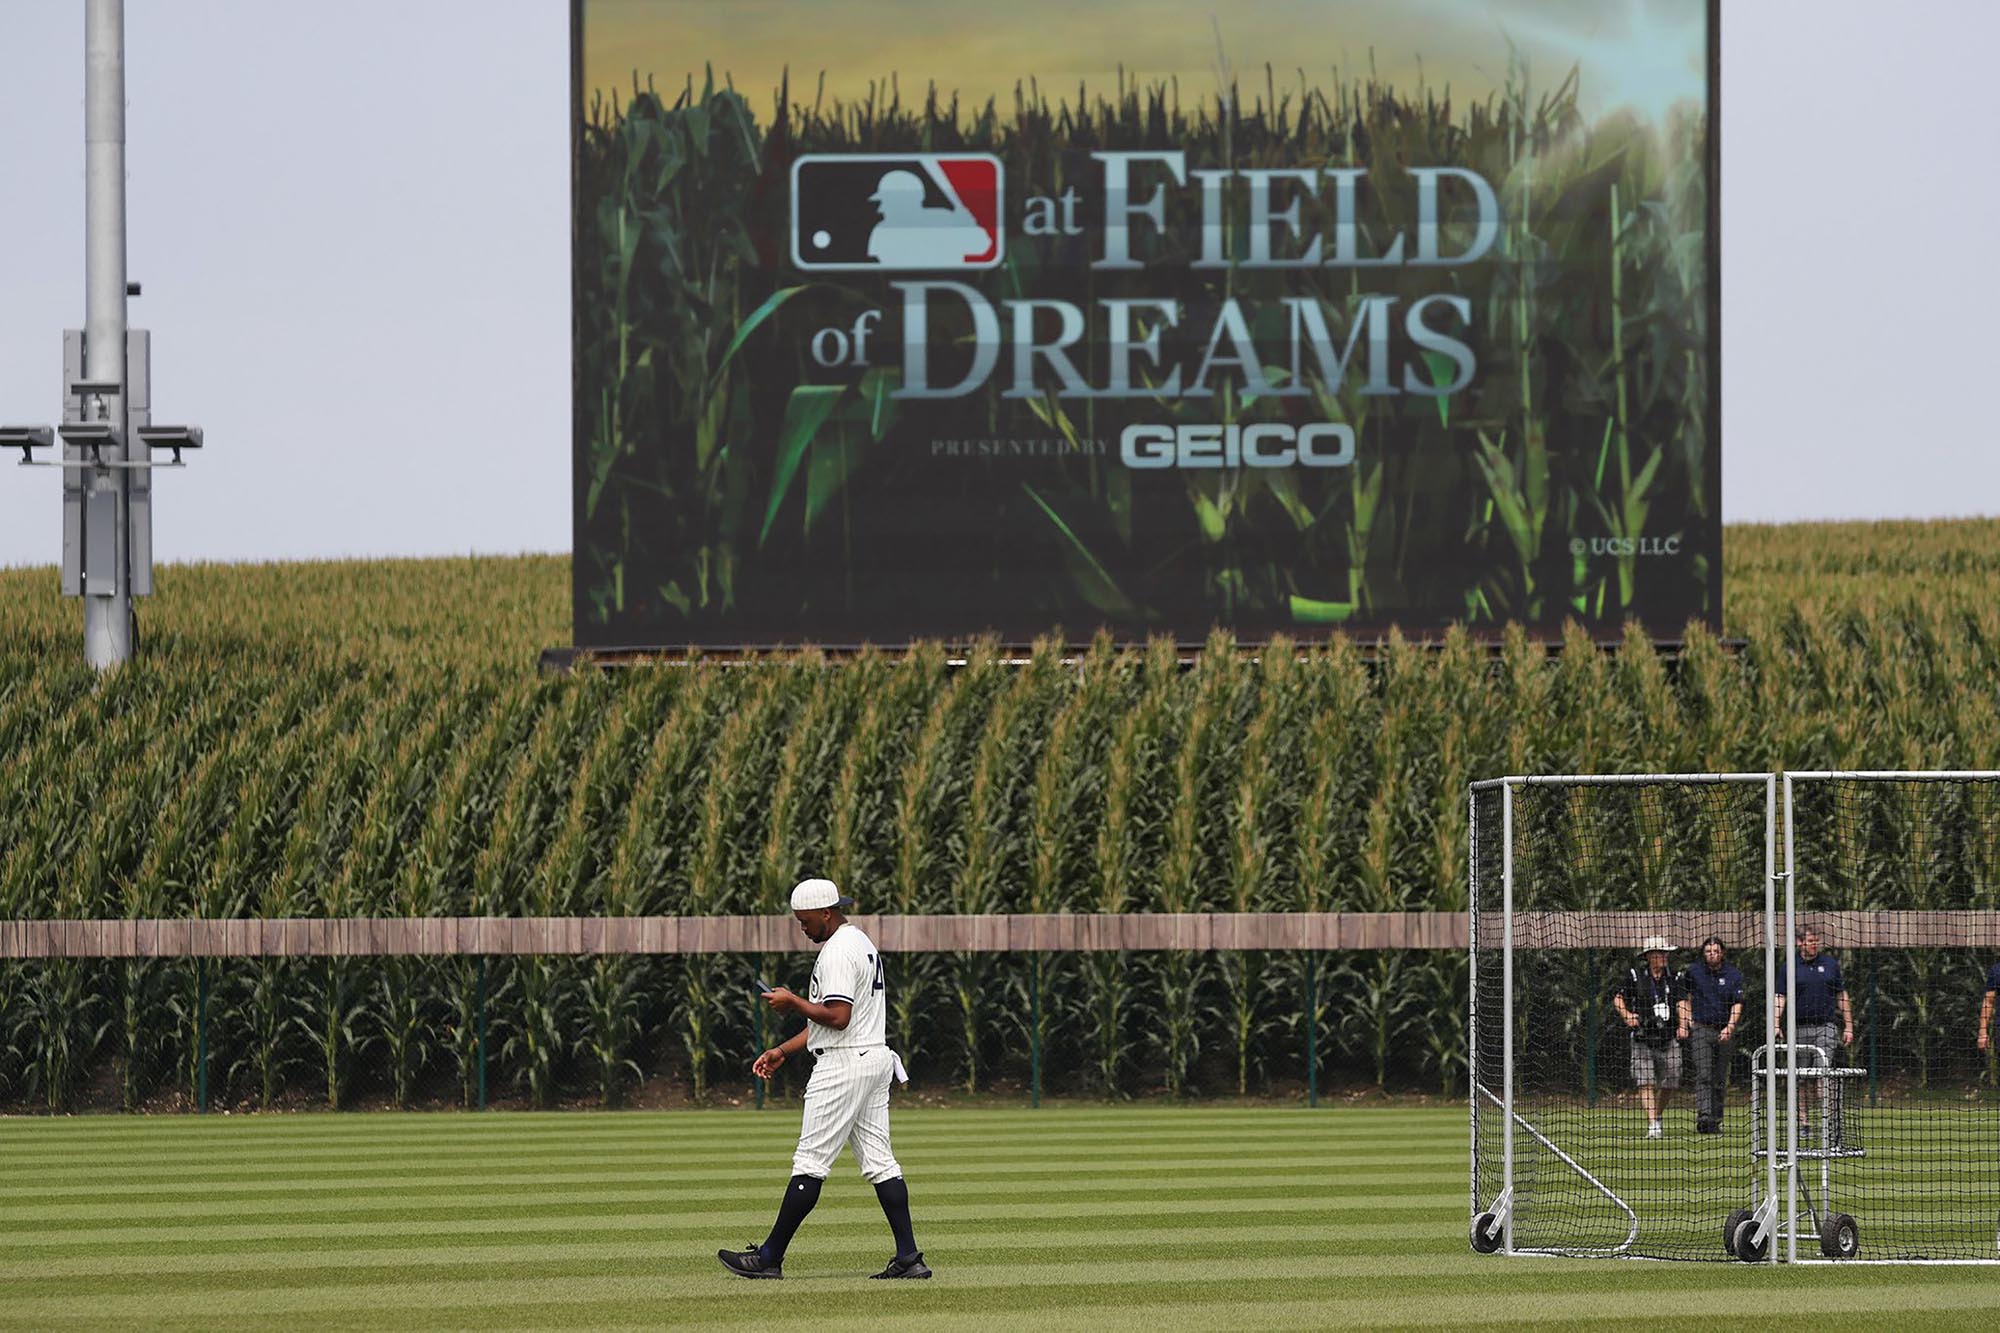 Chicago Cubs vs. Cincinnati Reds Nike 2022 Field of Dreams